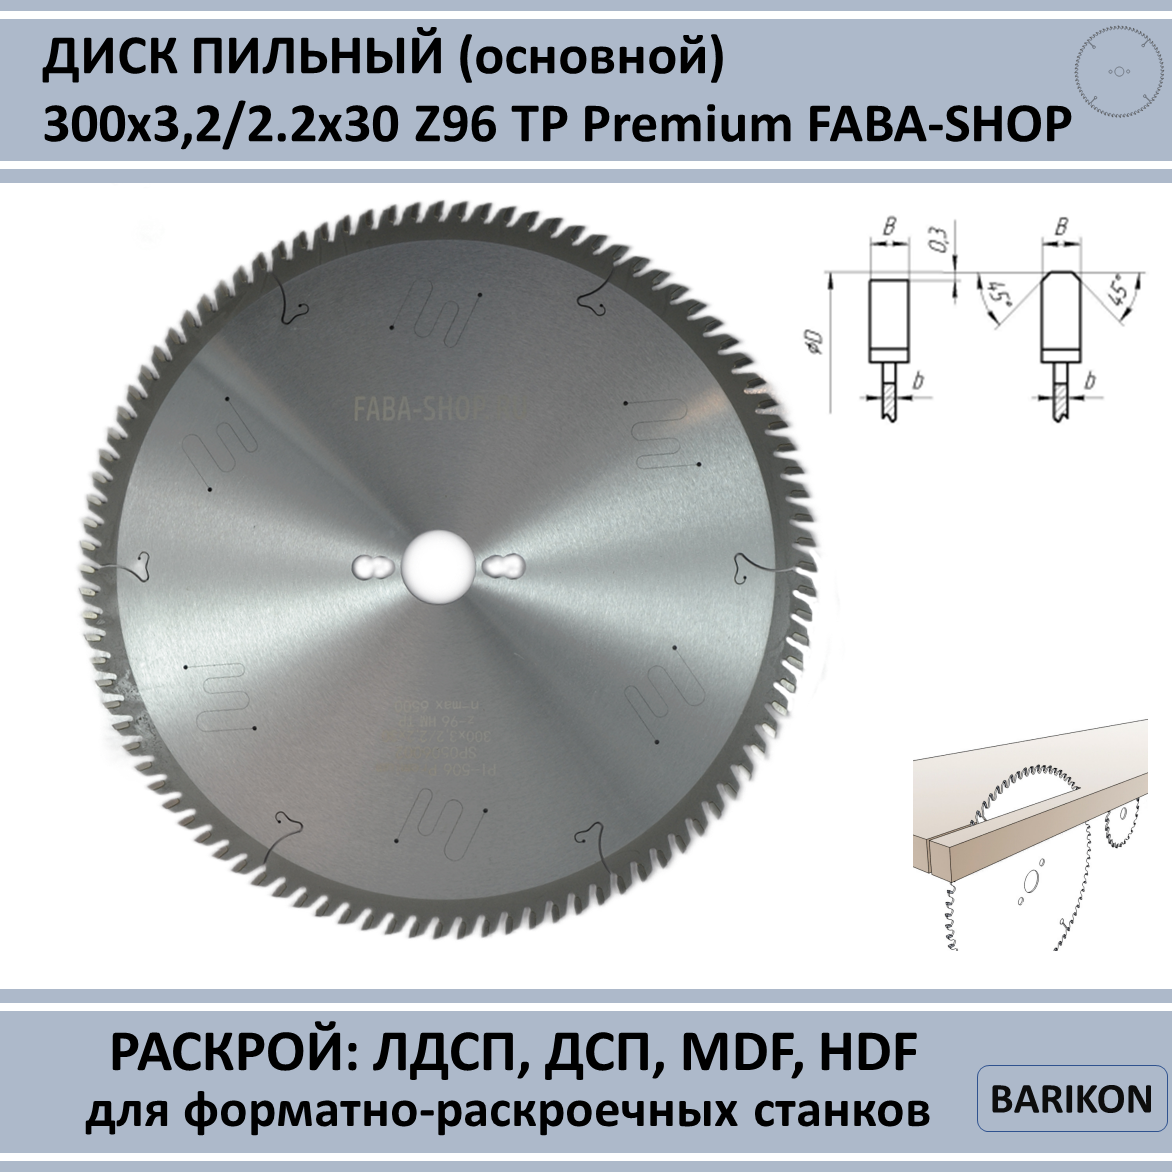 Пильный диск (основной) 300x3,2/2,2x30 Z96 TP PI-506 SP0506002 Premium FABA-SHOP для ДСП, ЛДСП, МДФ, ламинат